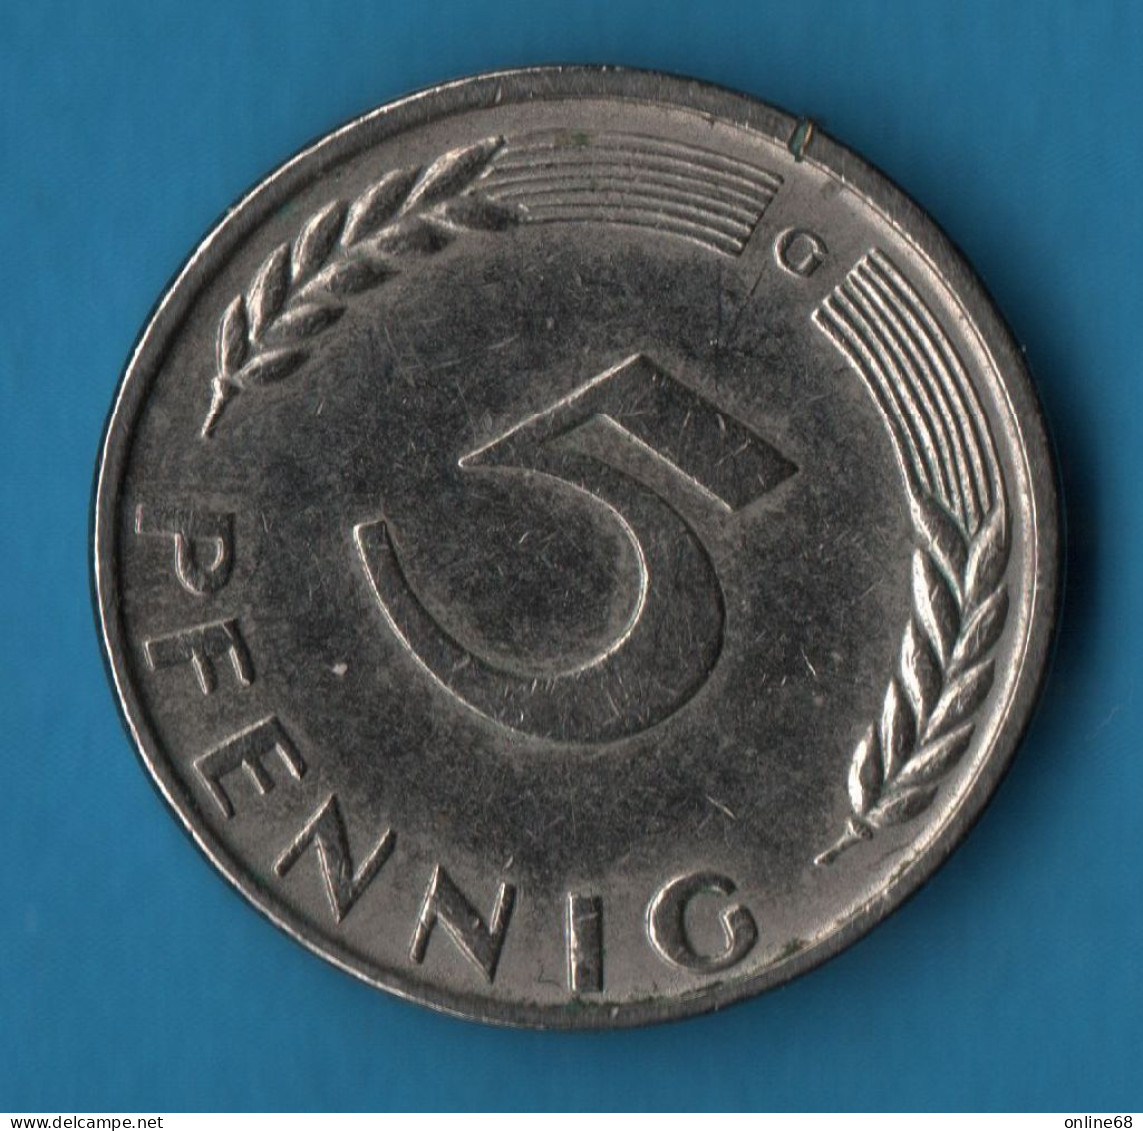 GERMANY 5 PFENNIG 1950 G KM# 107 BUNDESREPUBLIK DEUTSCHLAND - 5 Pfennig